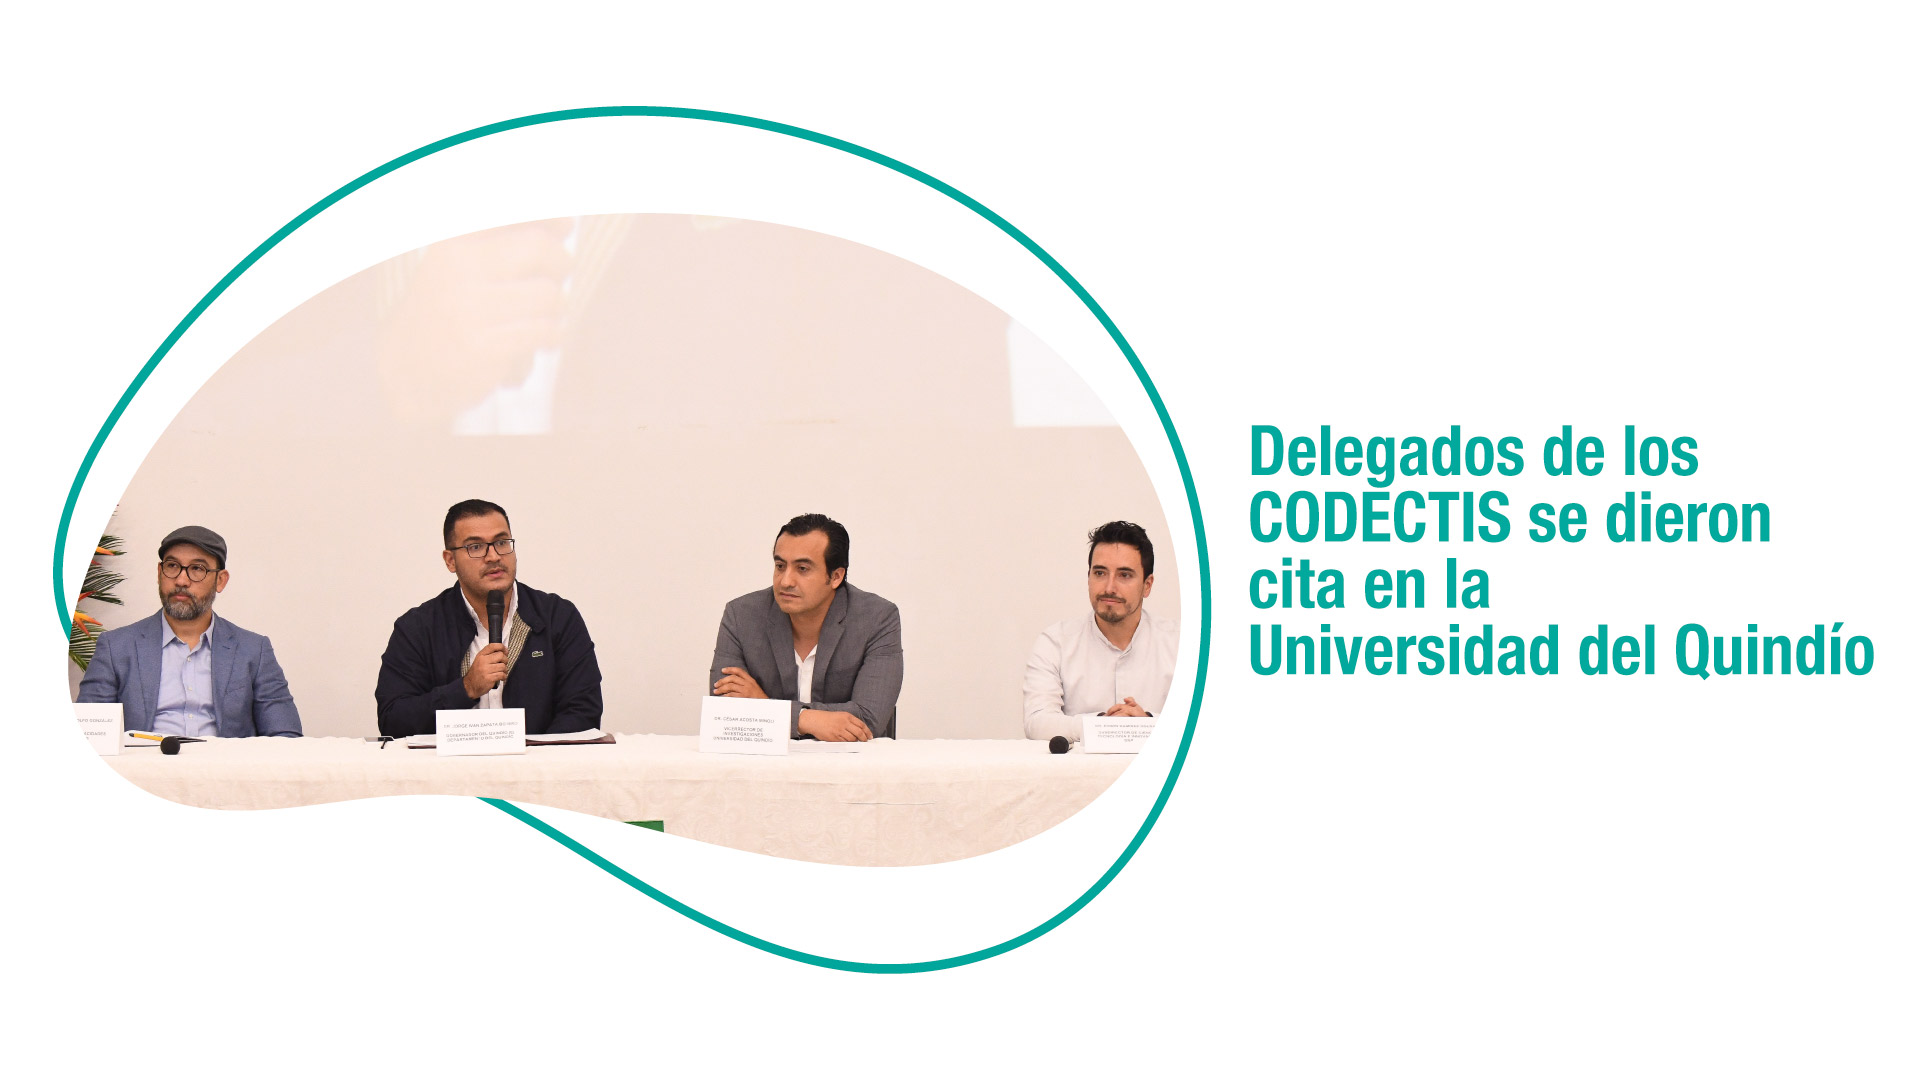 Delegados de los Consejos Departamentales de Competitividad, Ciencia, Tecnología e Innovación se dieron cita en la Universidad del Quindío